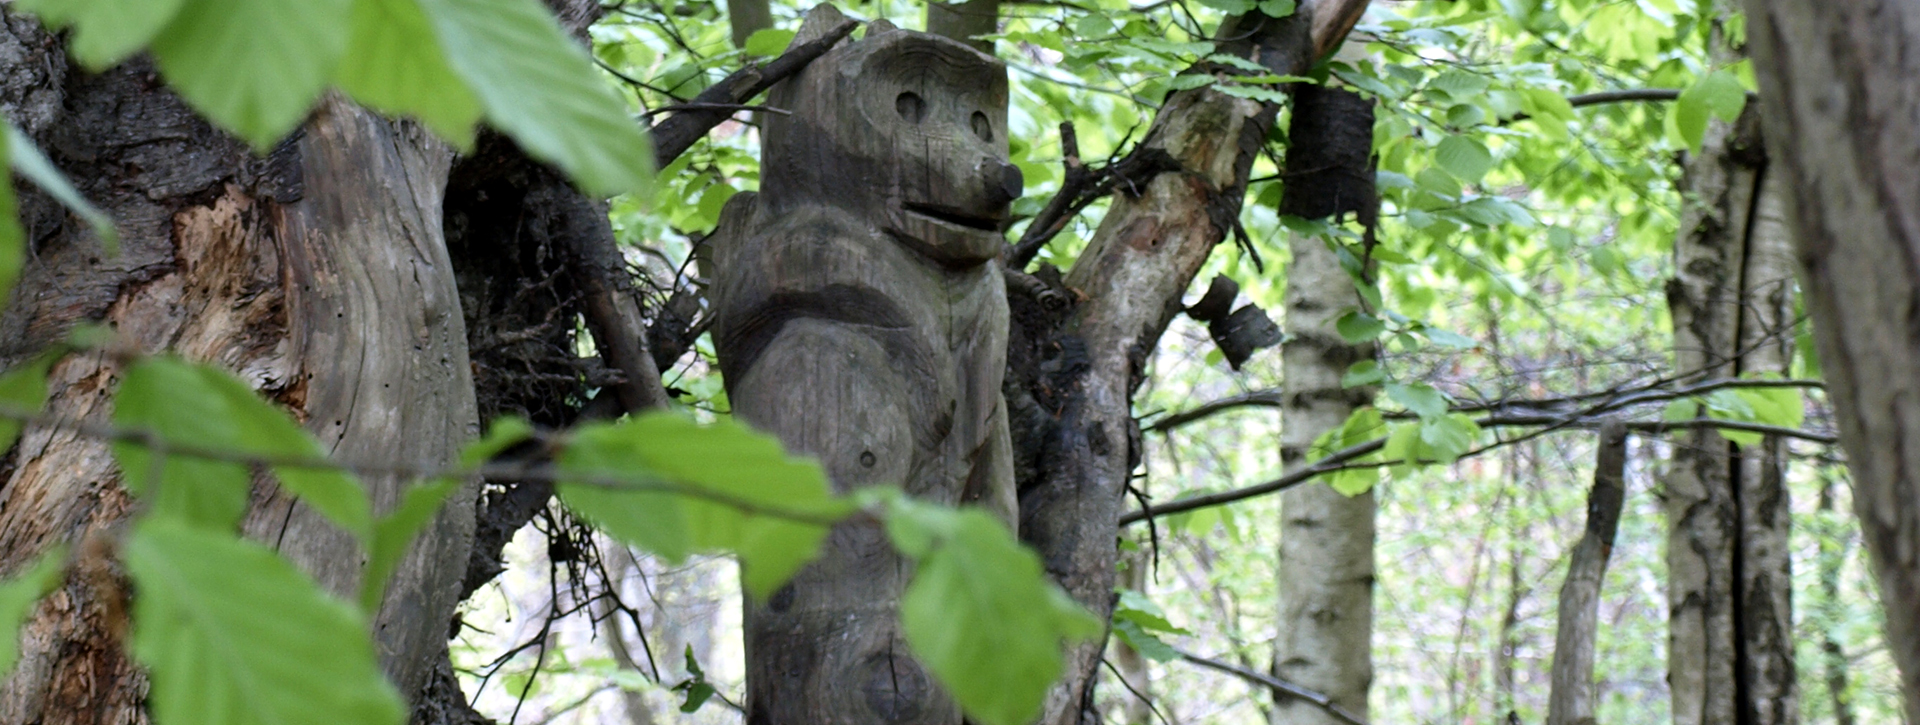 aus Holz geschnitzter Affe sitzt in einem Baum